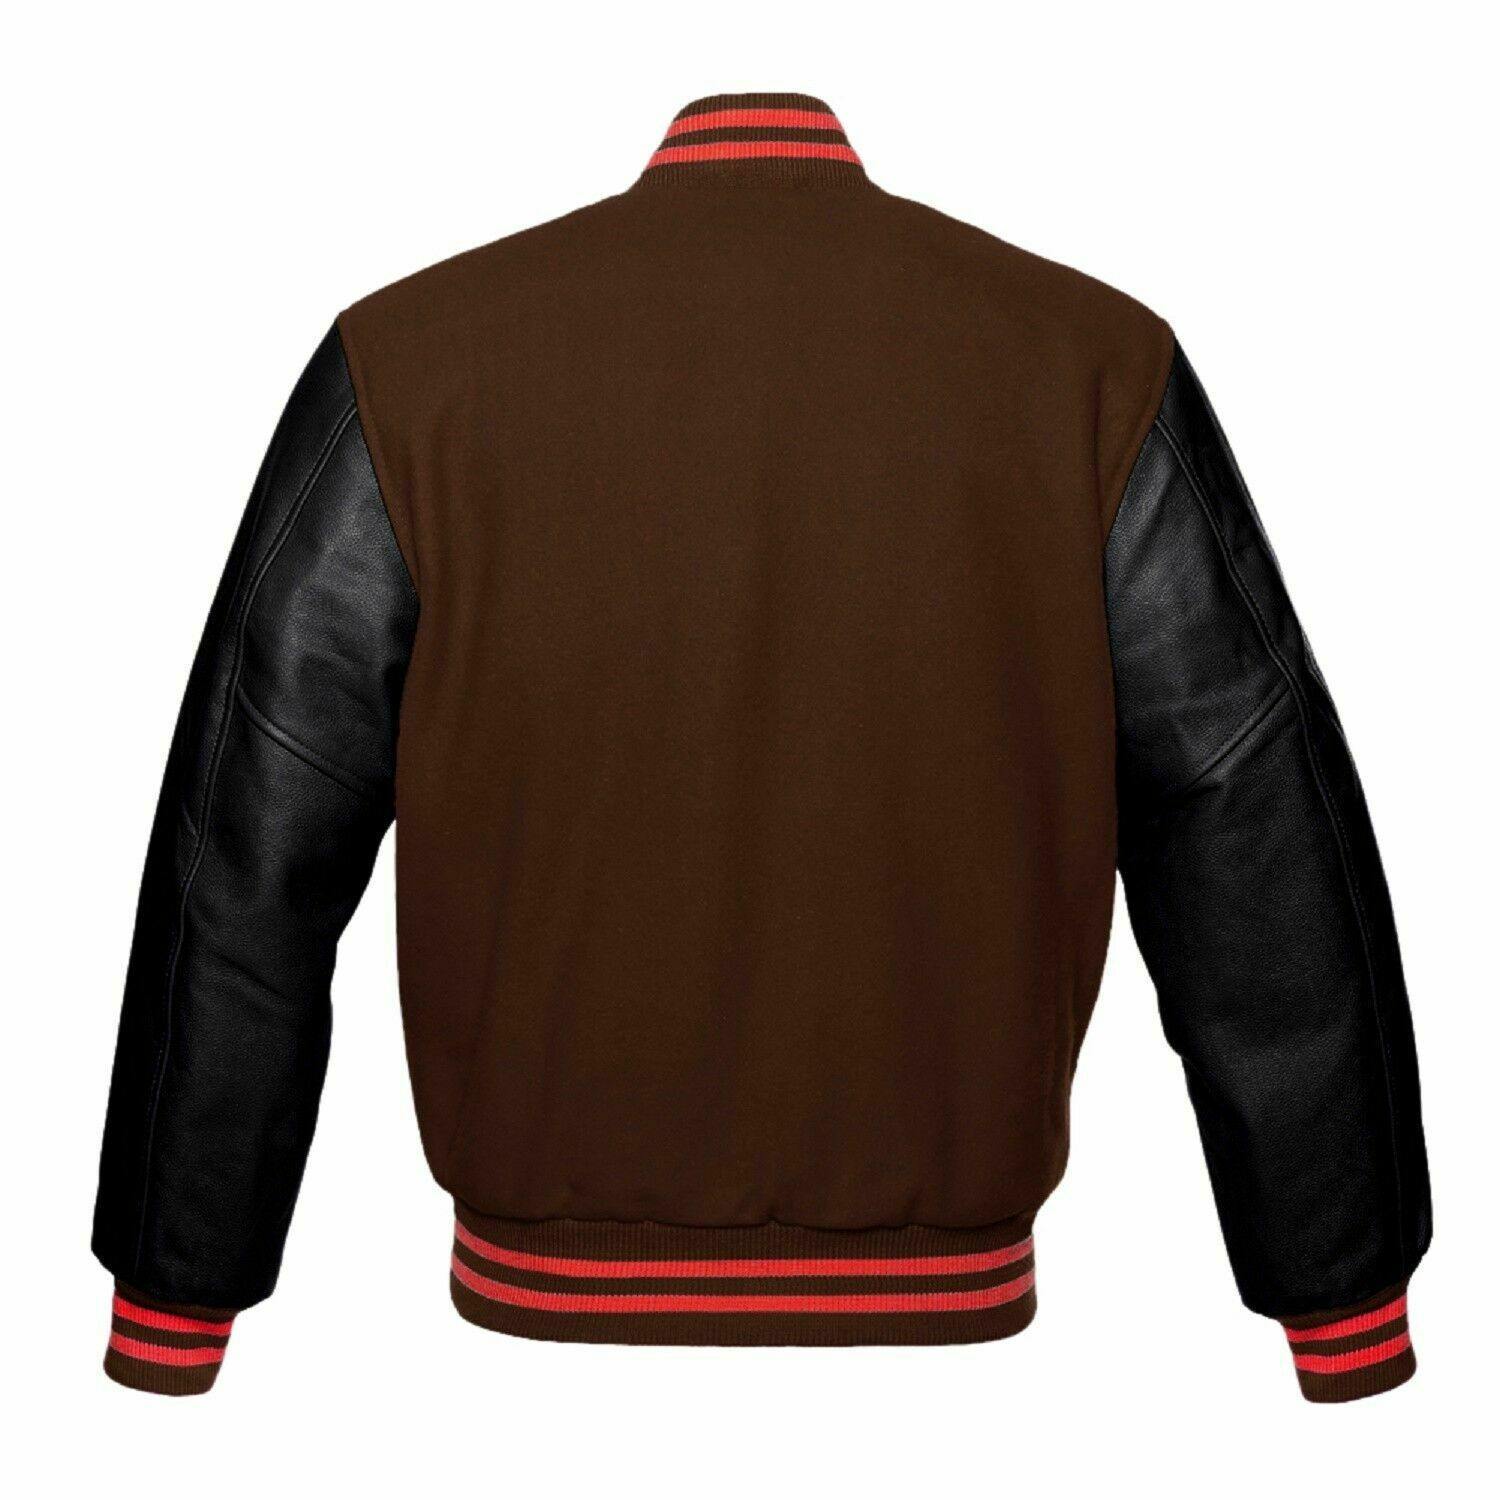 Spine Spark Brown Wool Varsity Jacket Black Leather Sleeves